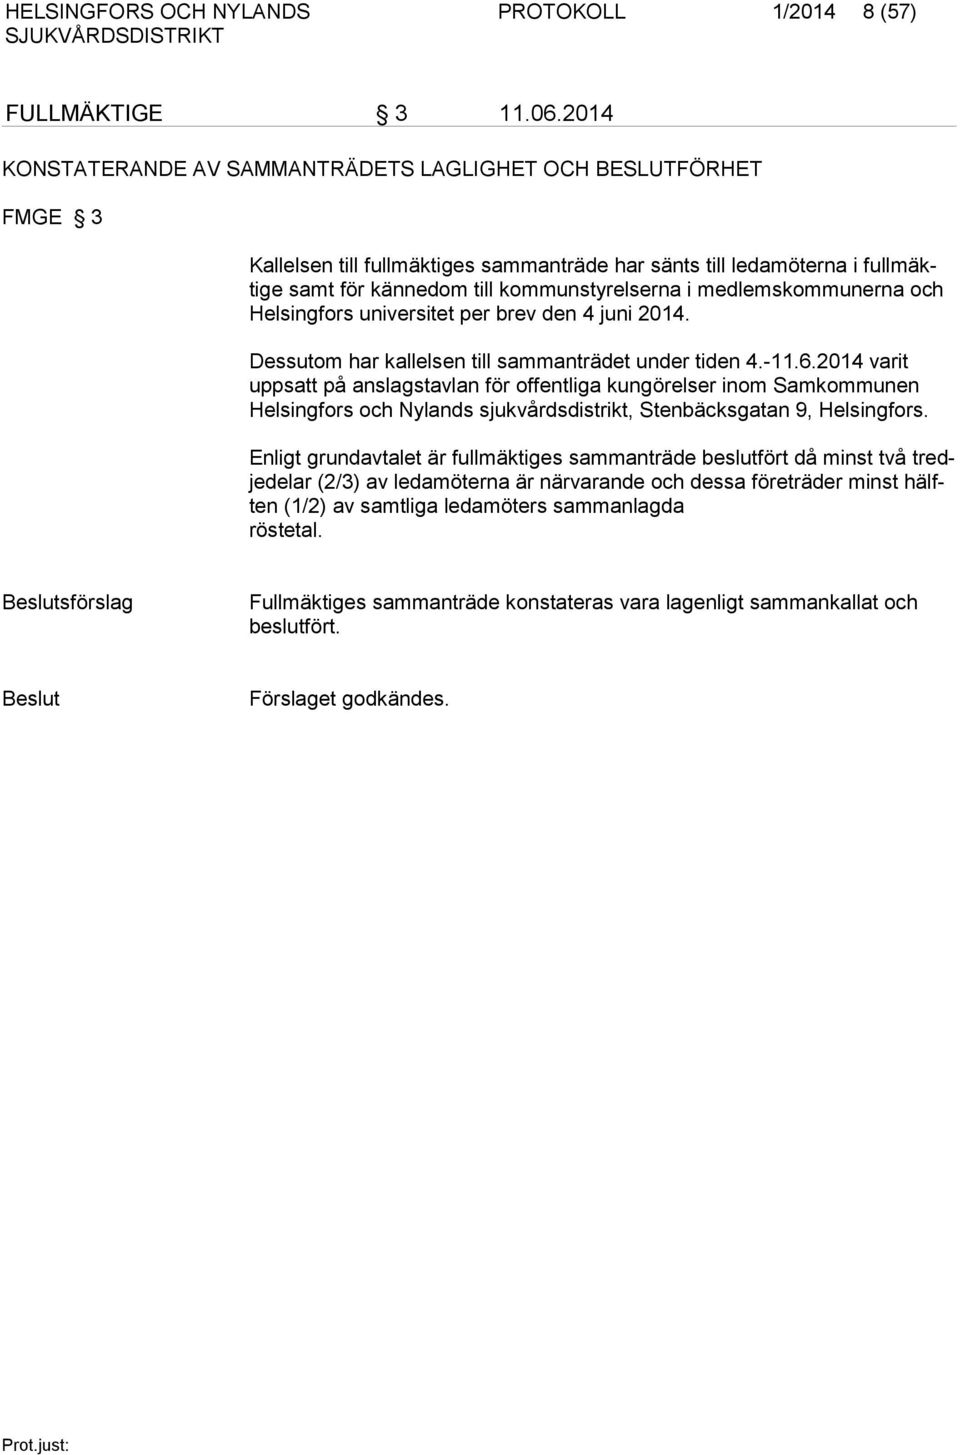 lems kom munerna och Helsingfors universitet per brev den 4 juni 2014. Dessutom har kallelsen till sammanträdet under tiden 4.-11.6.